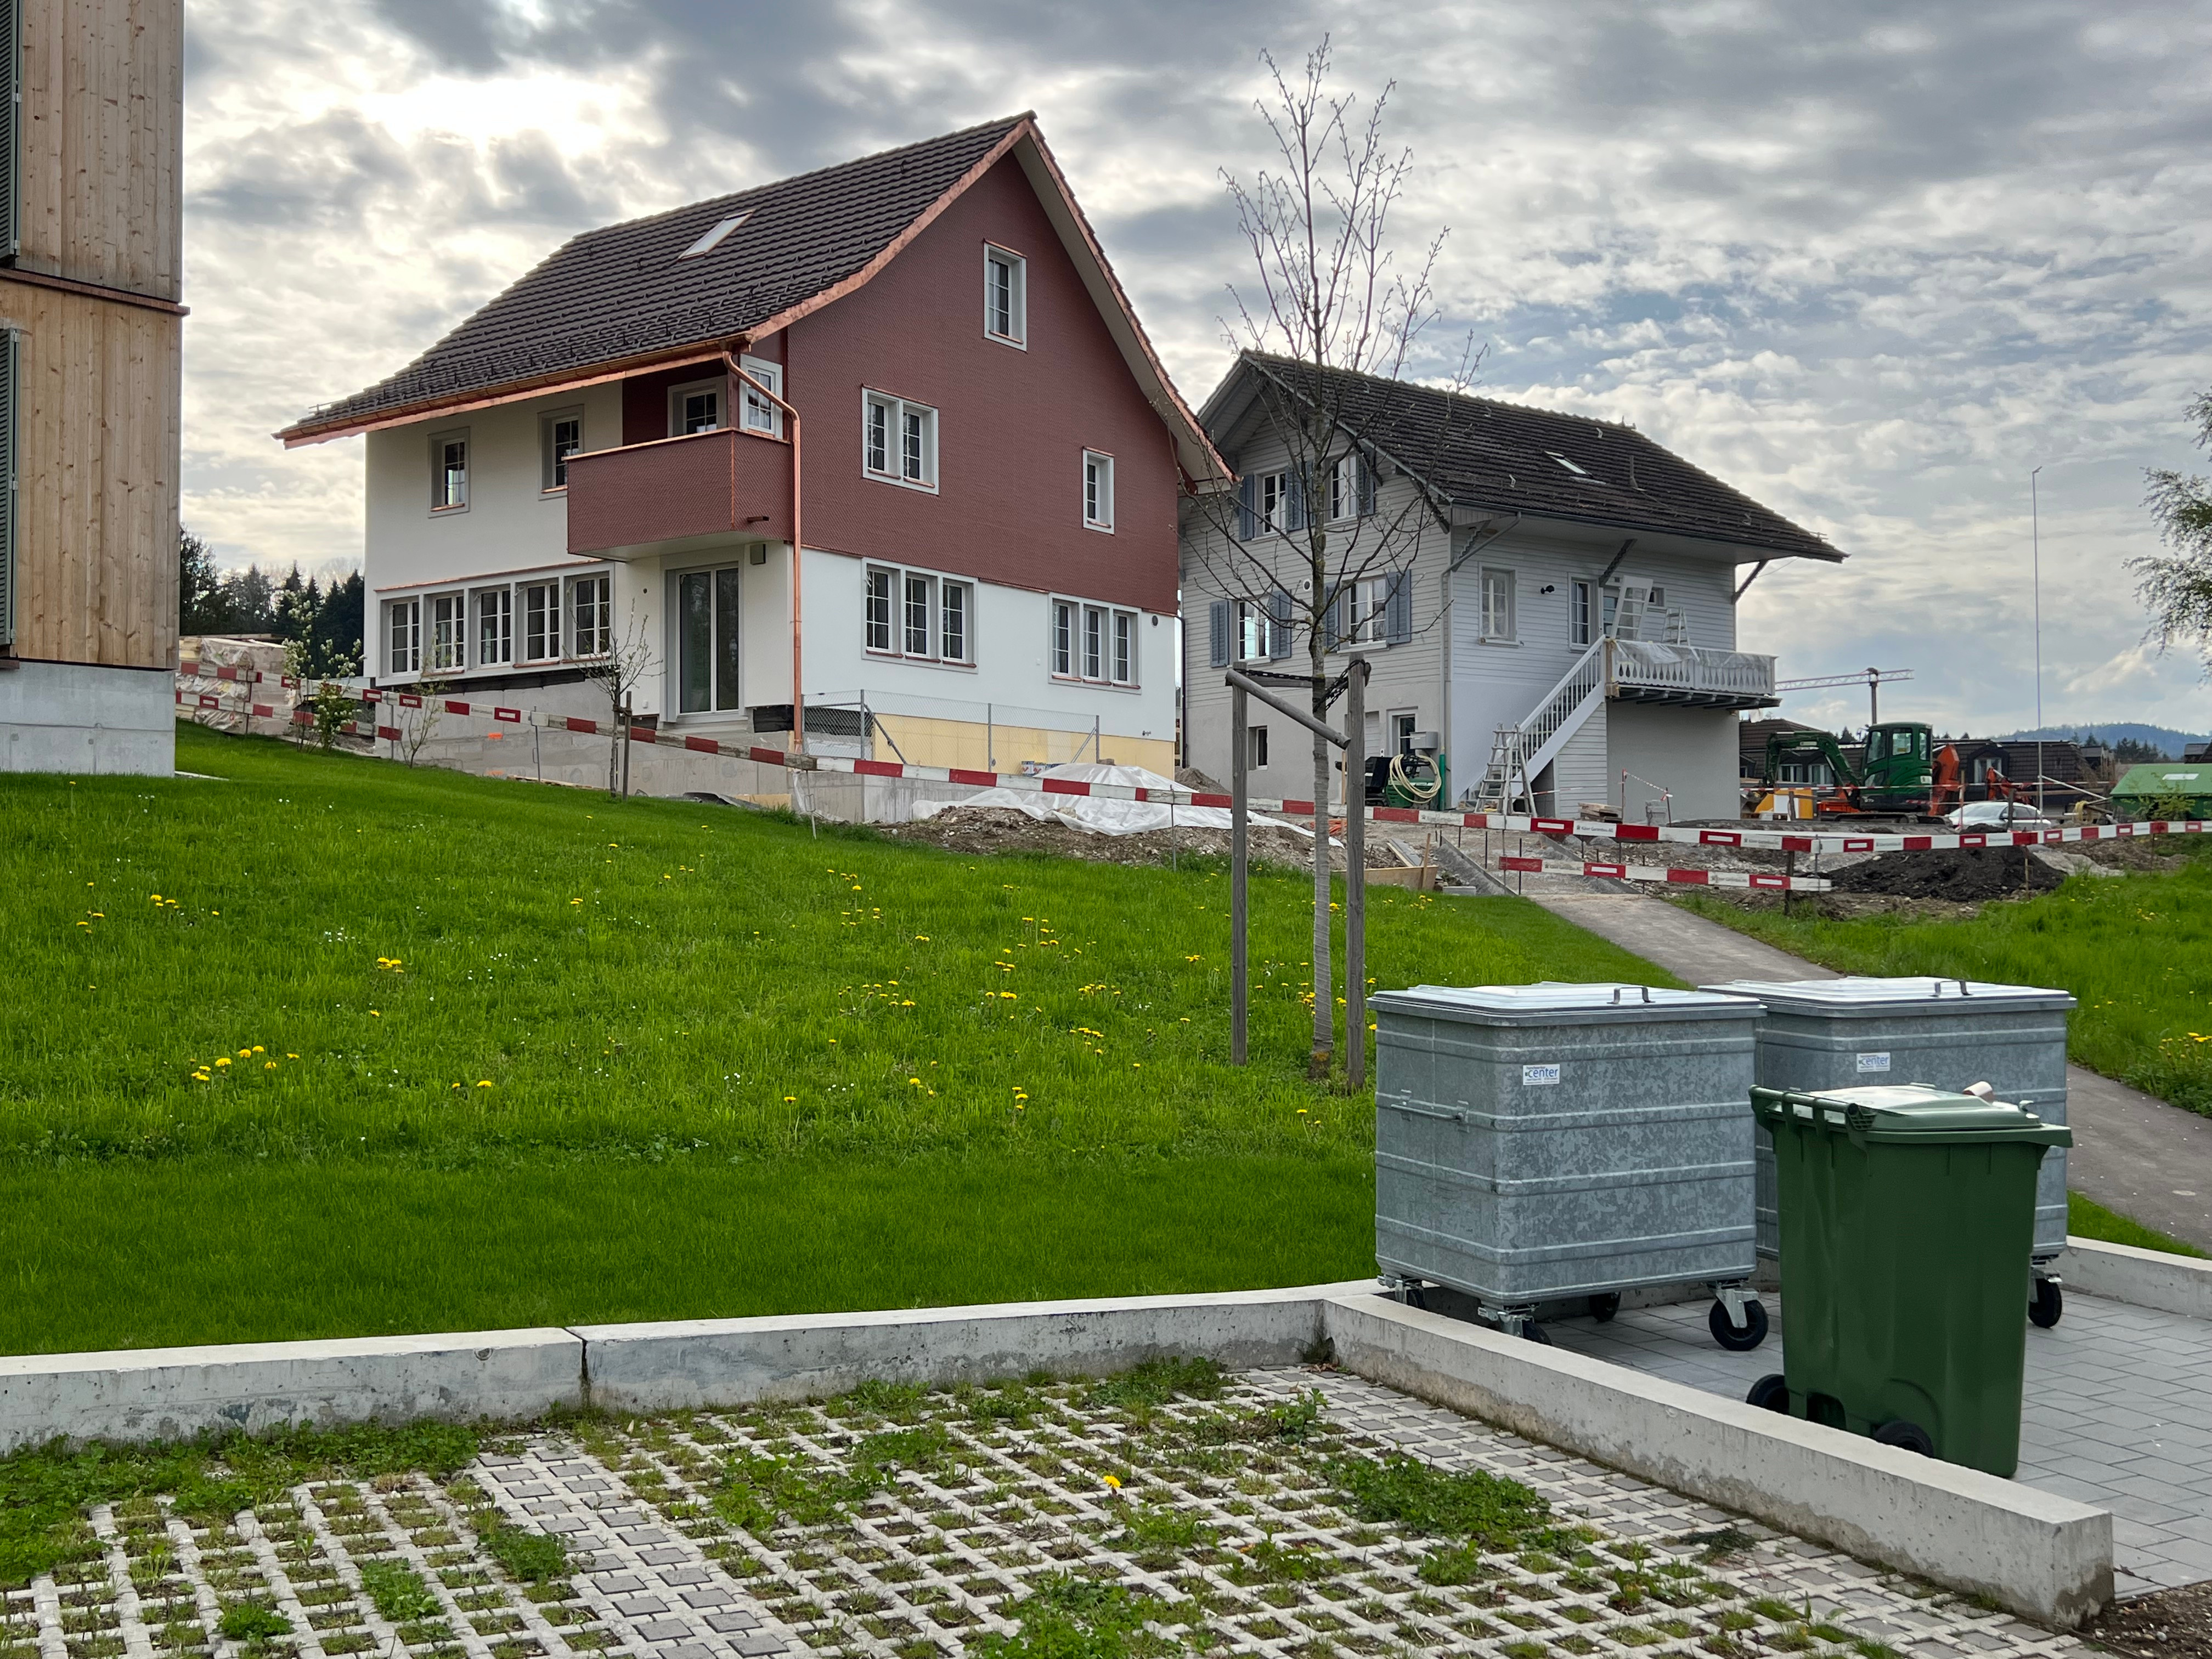 Umbauarbeiten Haus Bezirk Meilen